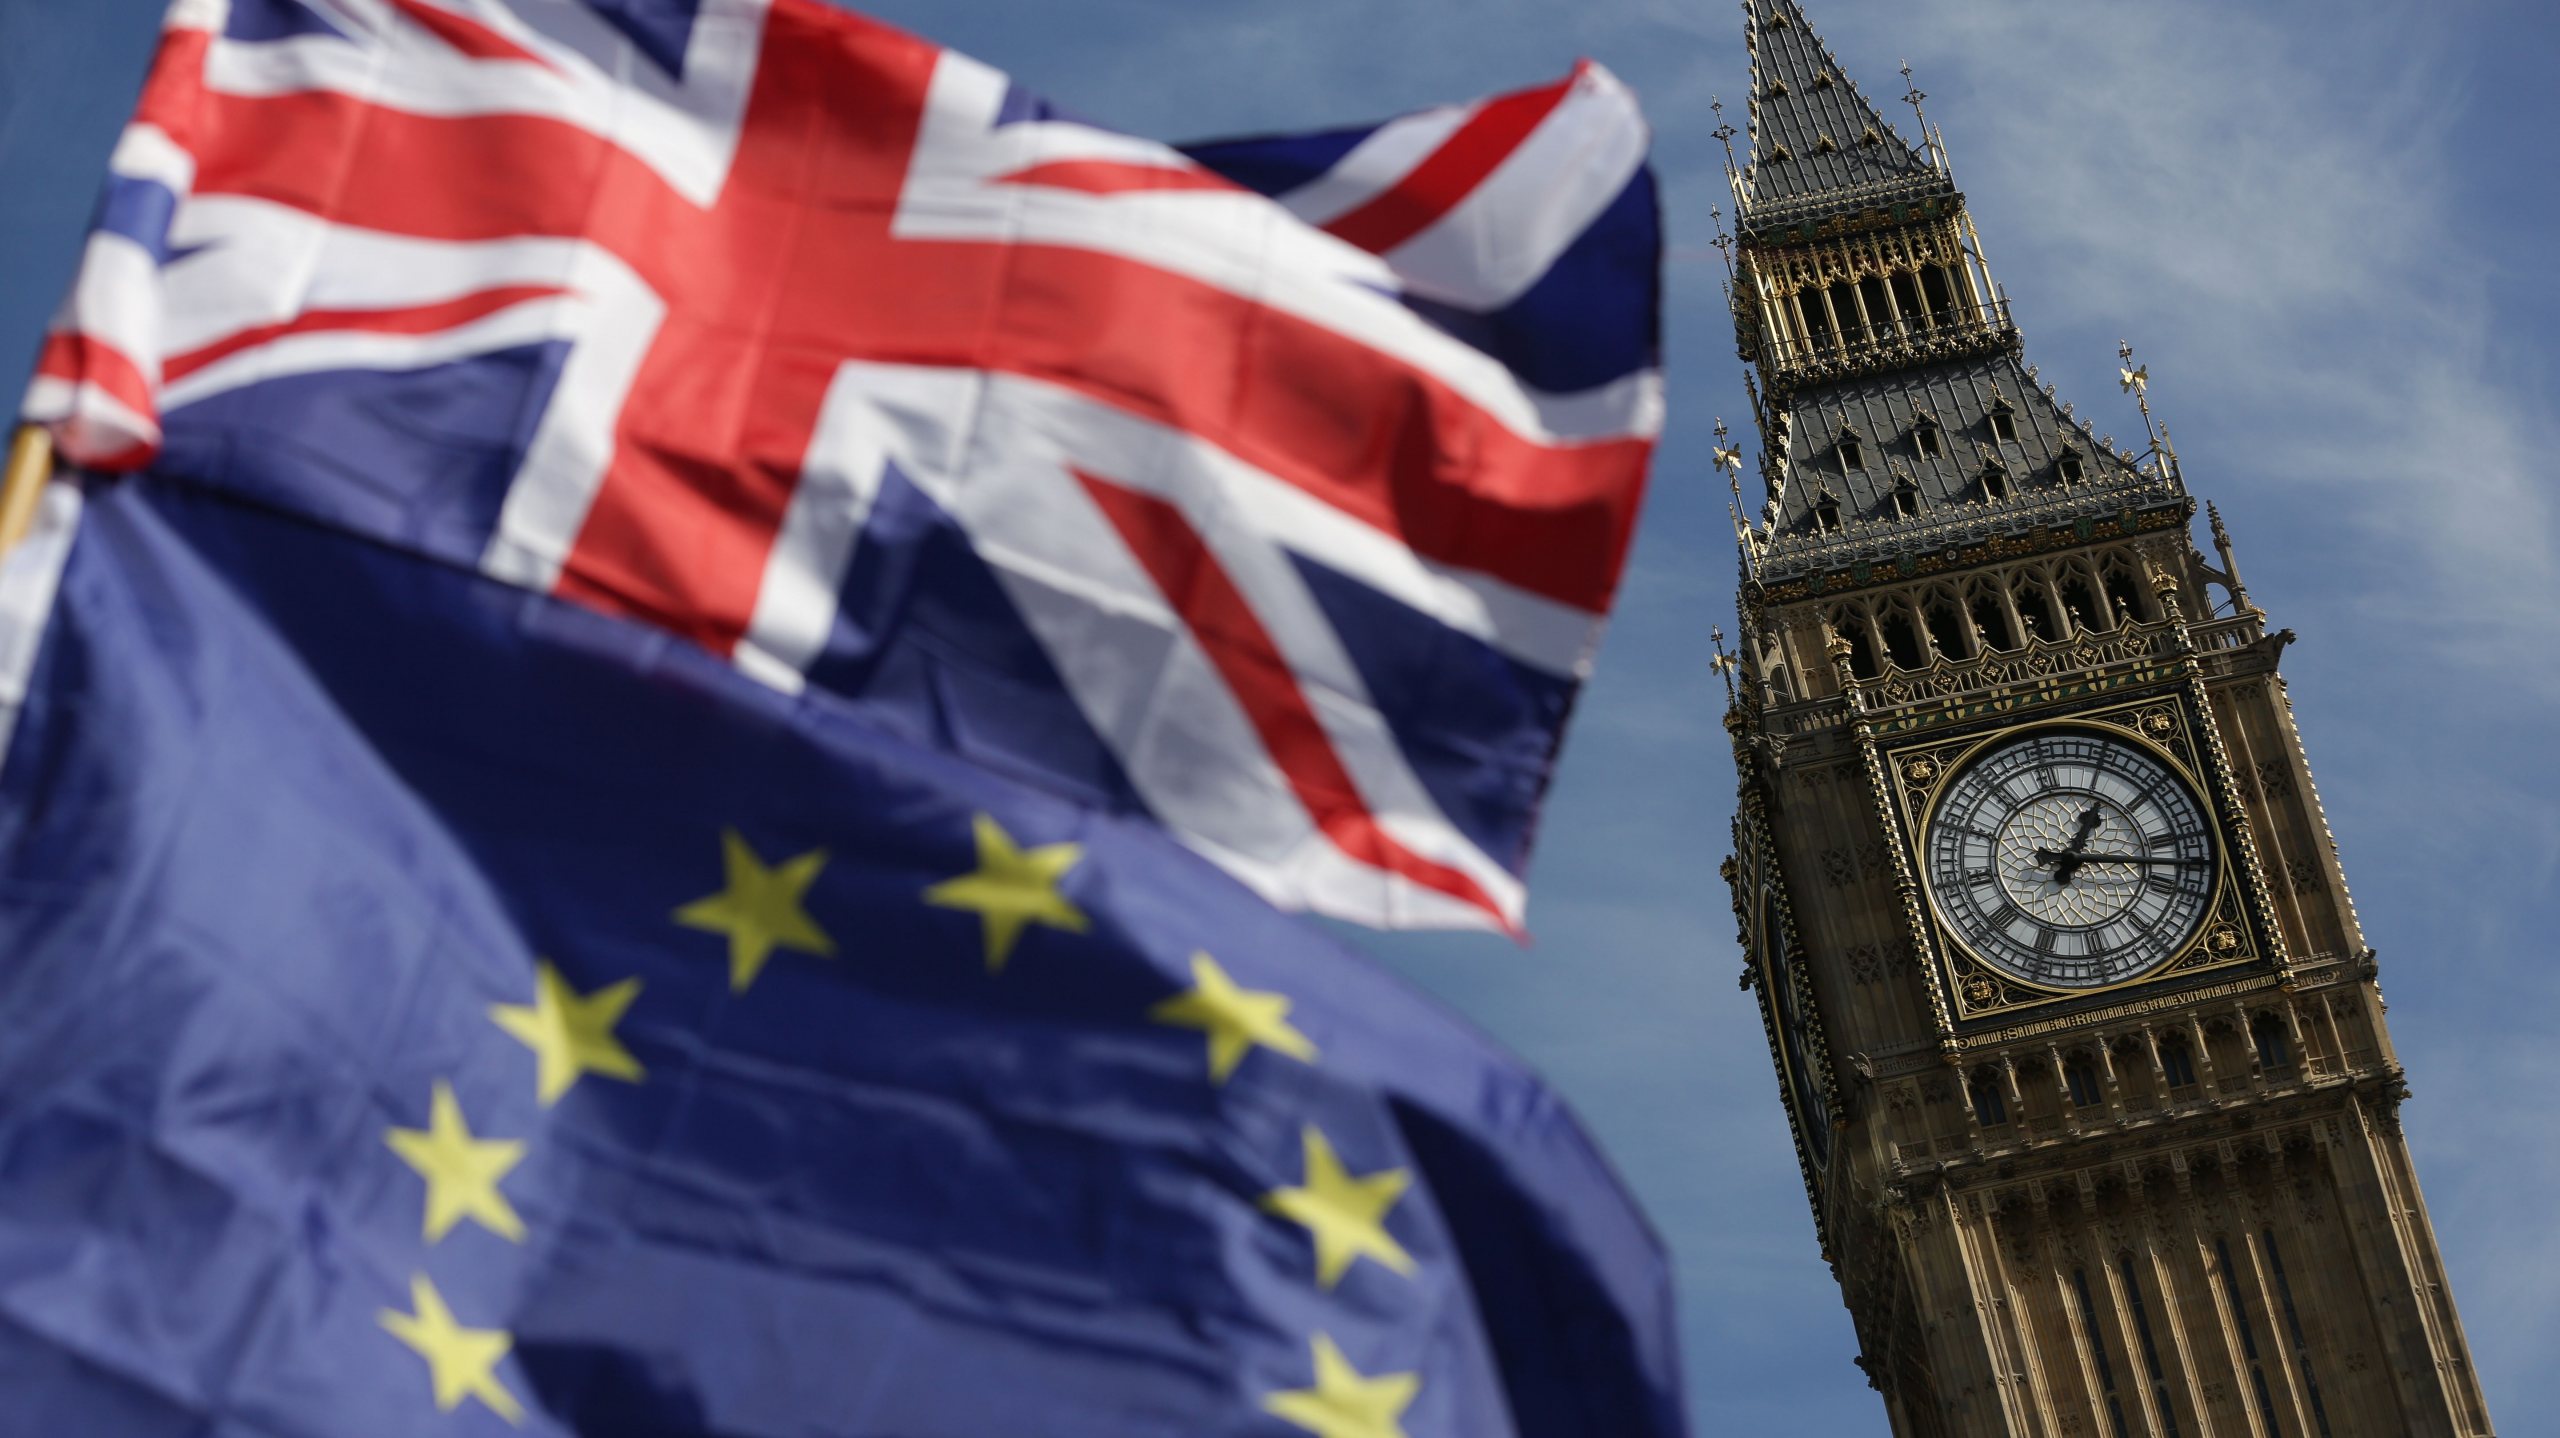 O Reino Unido saiu da União Europeia a 31 de janeiro deste ano